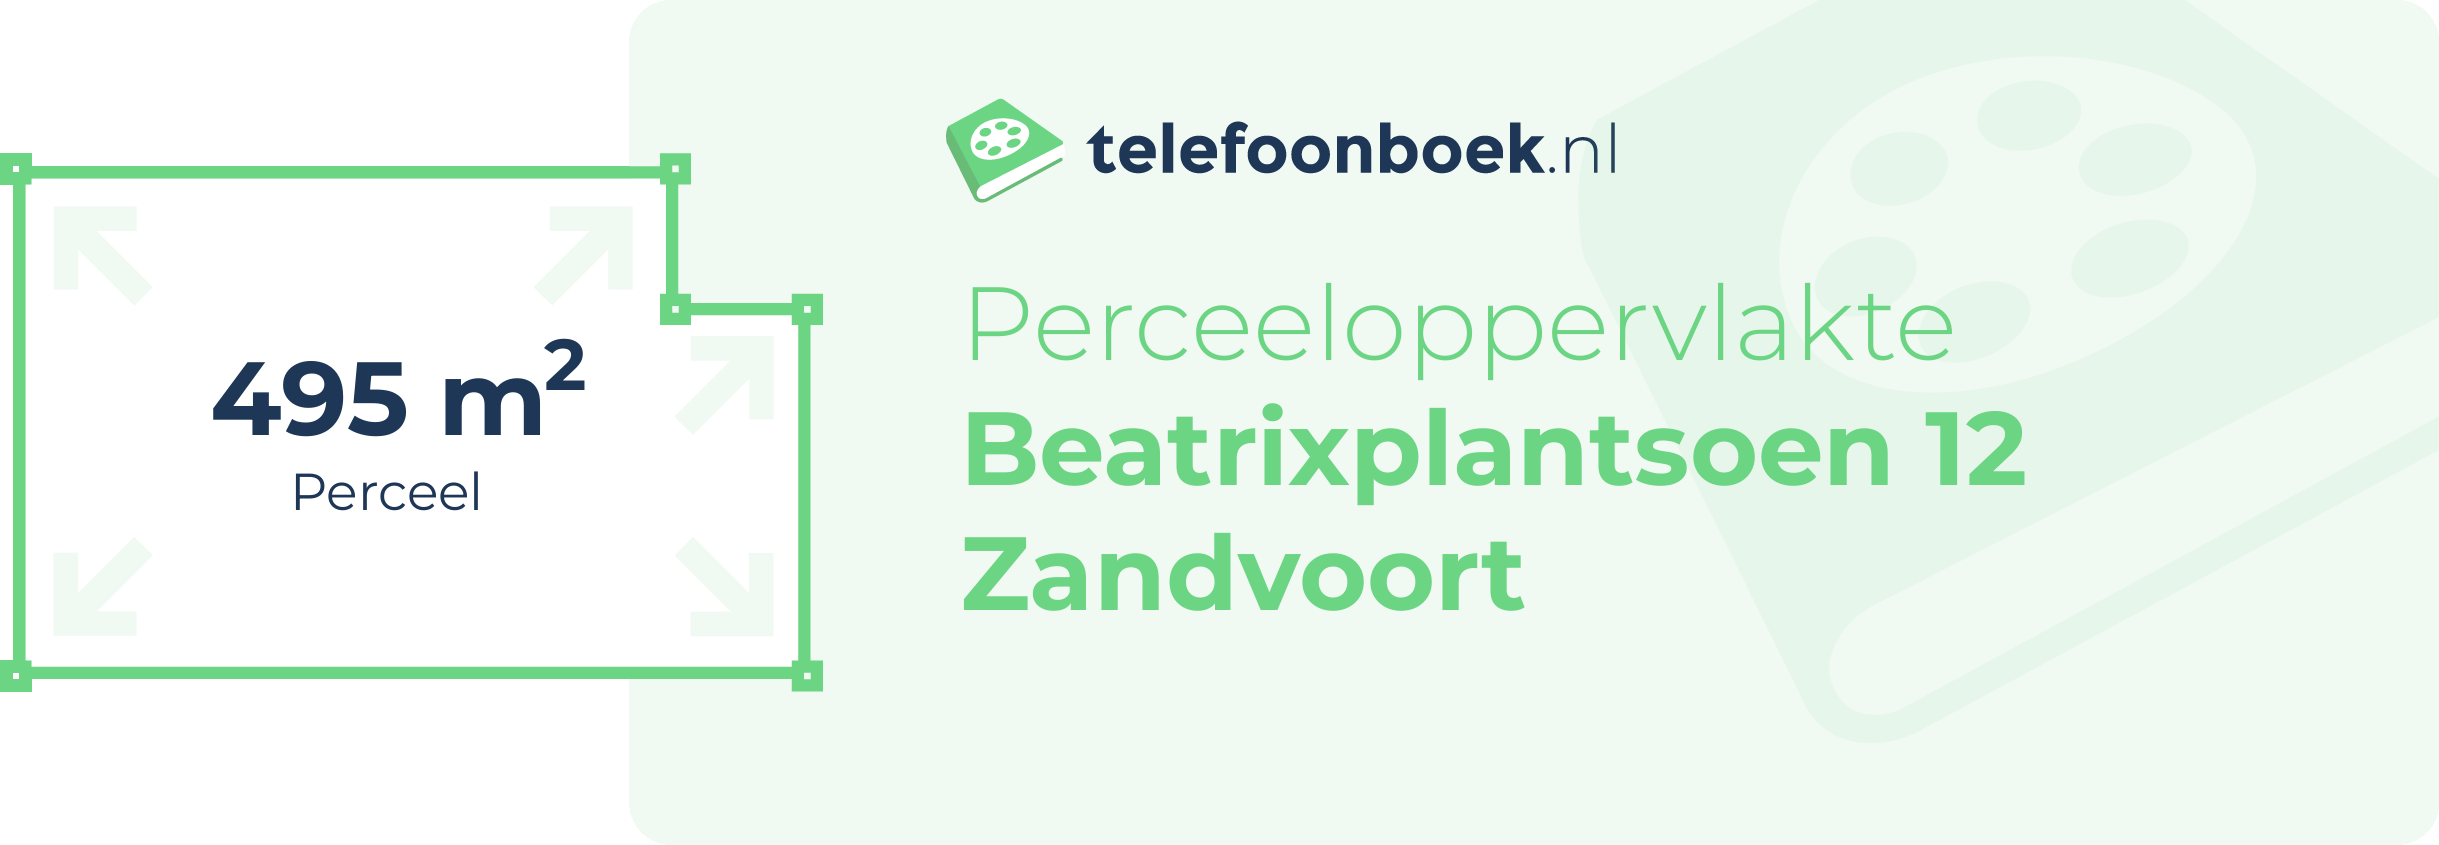 Perceeloppervlakte Beatrixplantsoen 12 Zandvoort